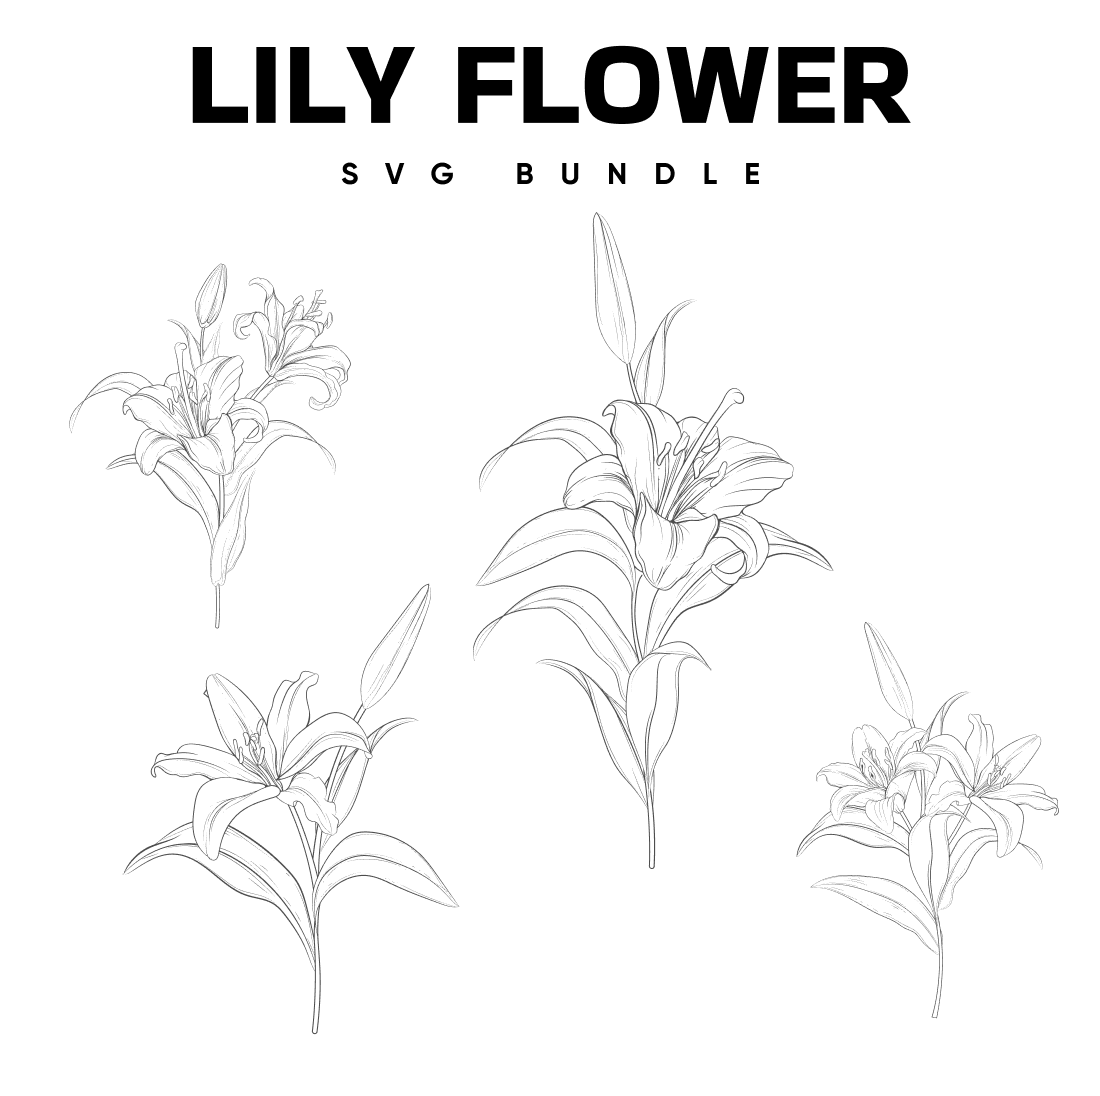 Lily Flower SVG.